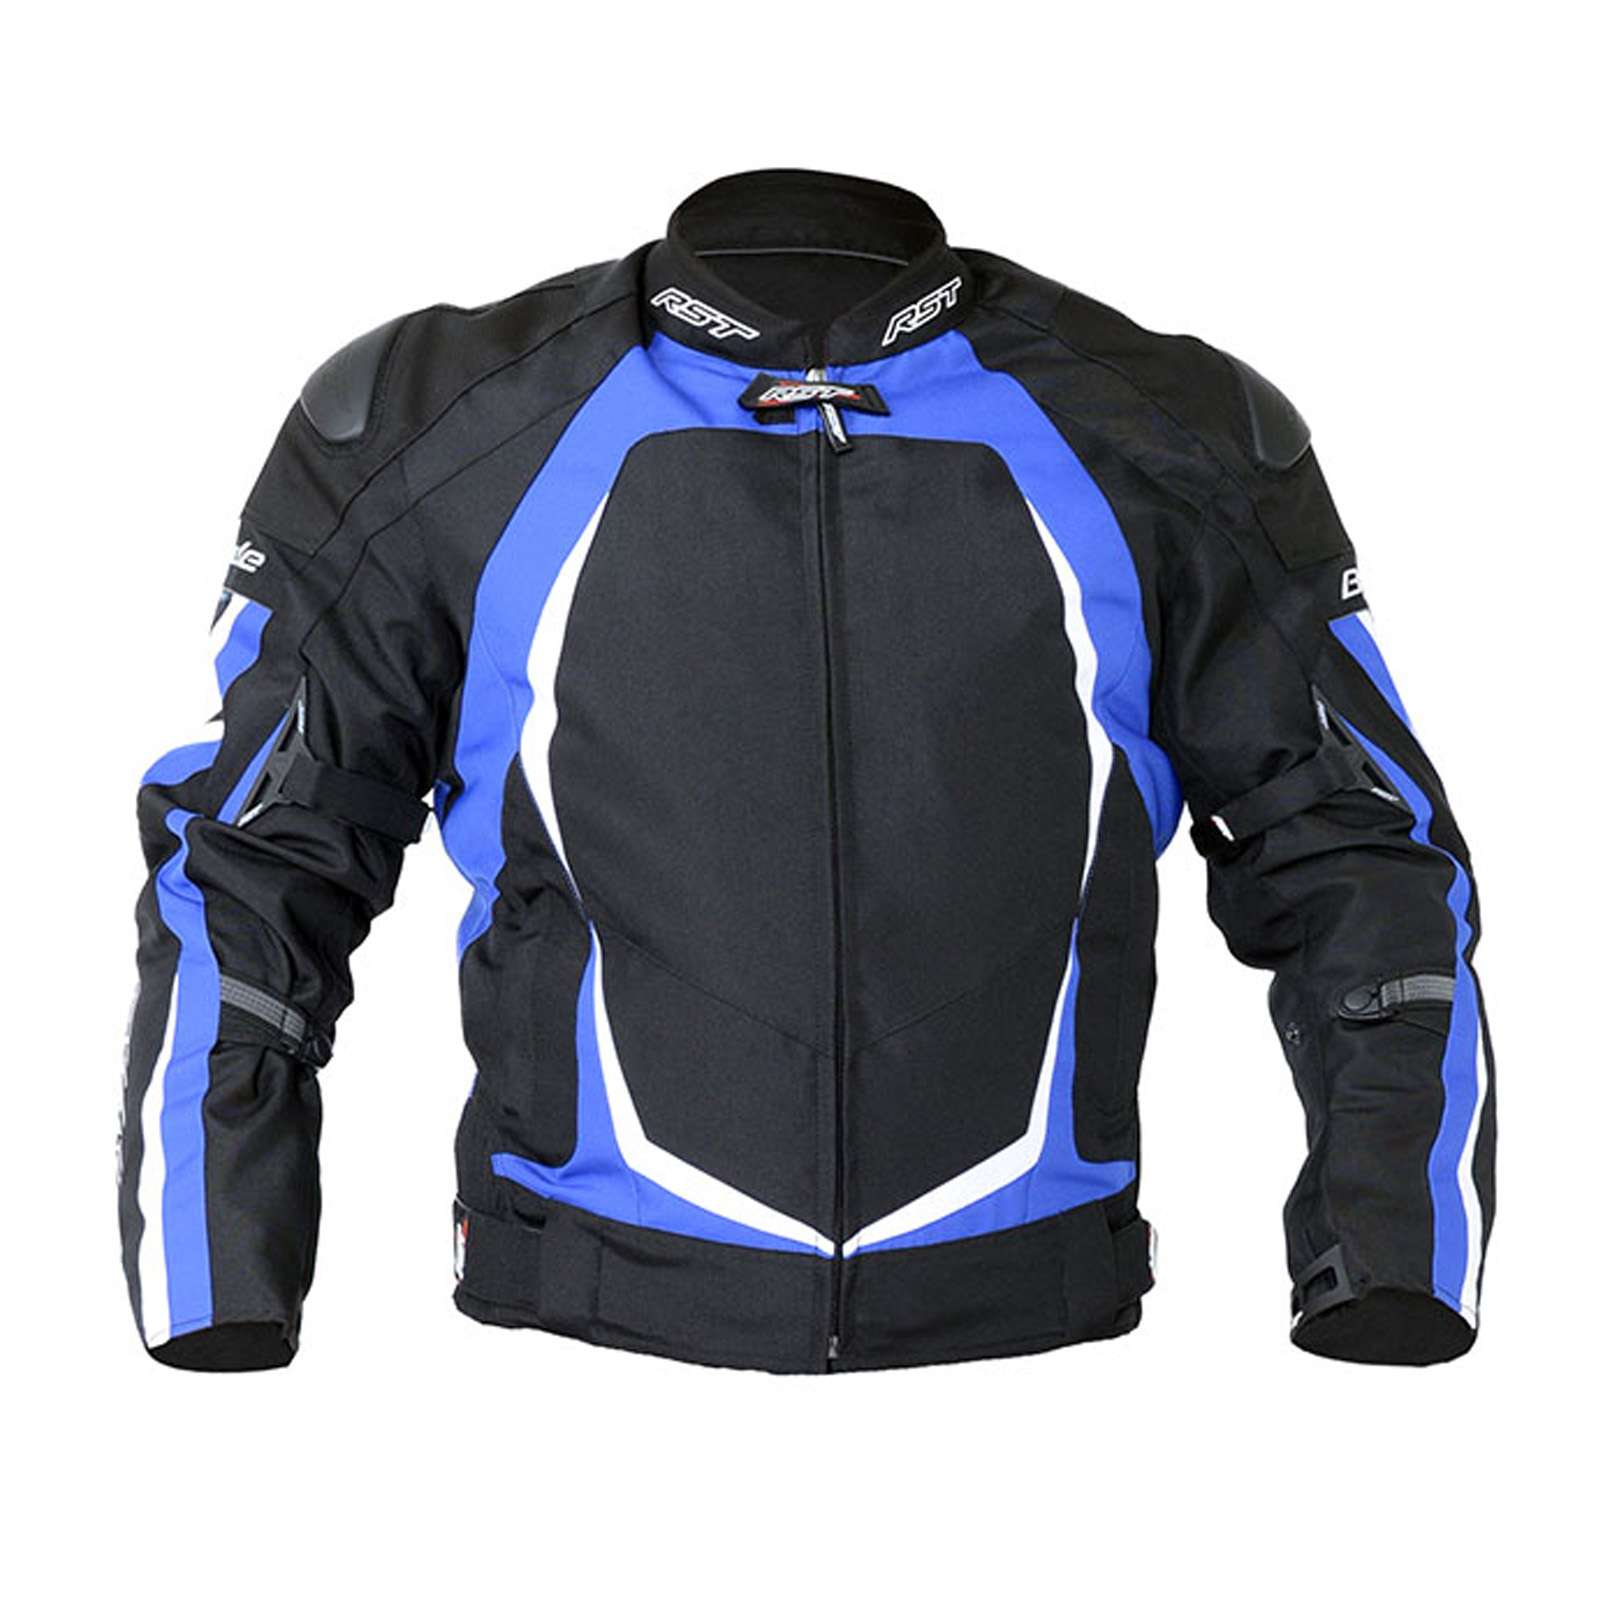 2890 RST Blade 2 II Textile Waterproof Motorcycle Jacket Black 1890